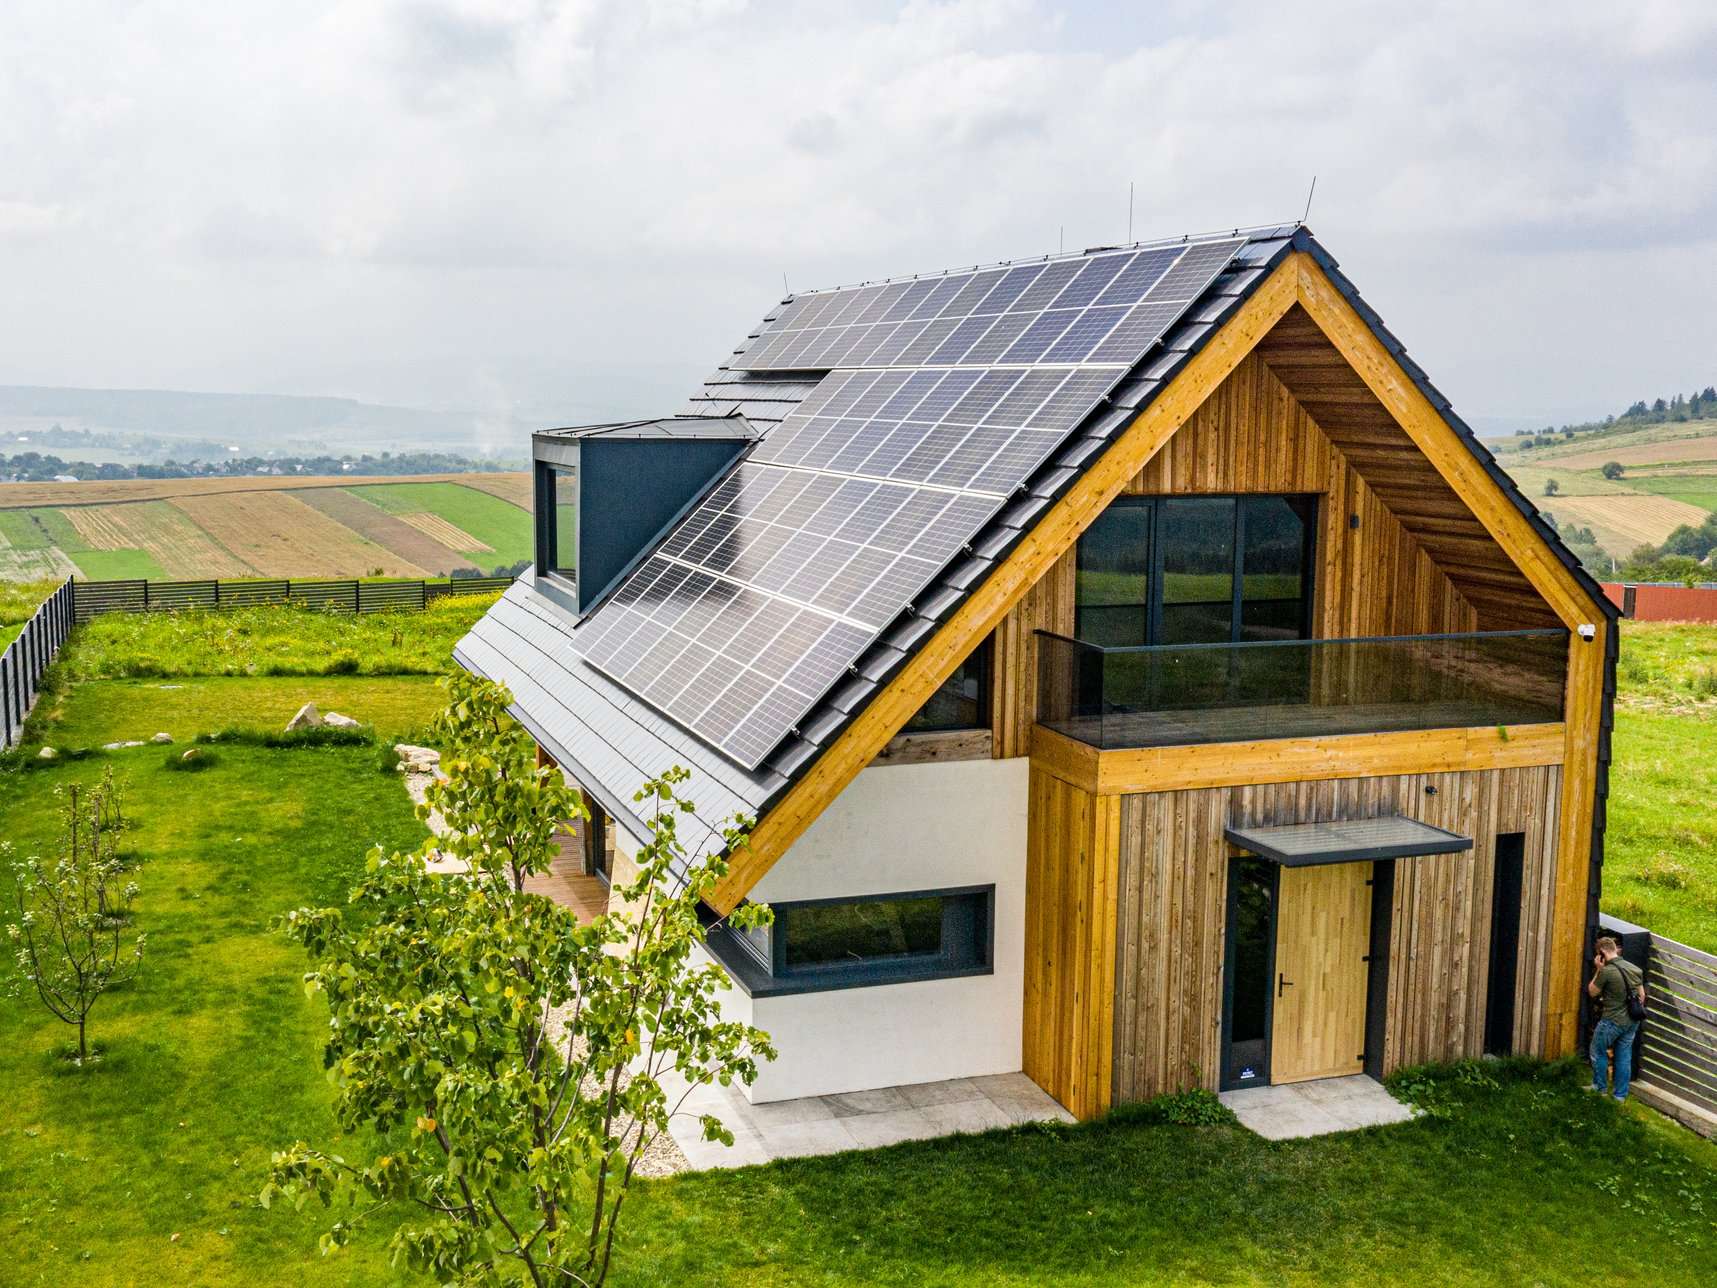 Ein Haus in einer ländlichen Umgebung. Auf dem Dach sieht man Solarpanels.